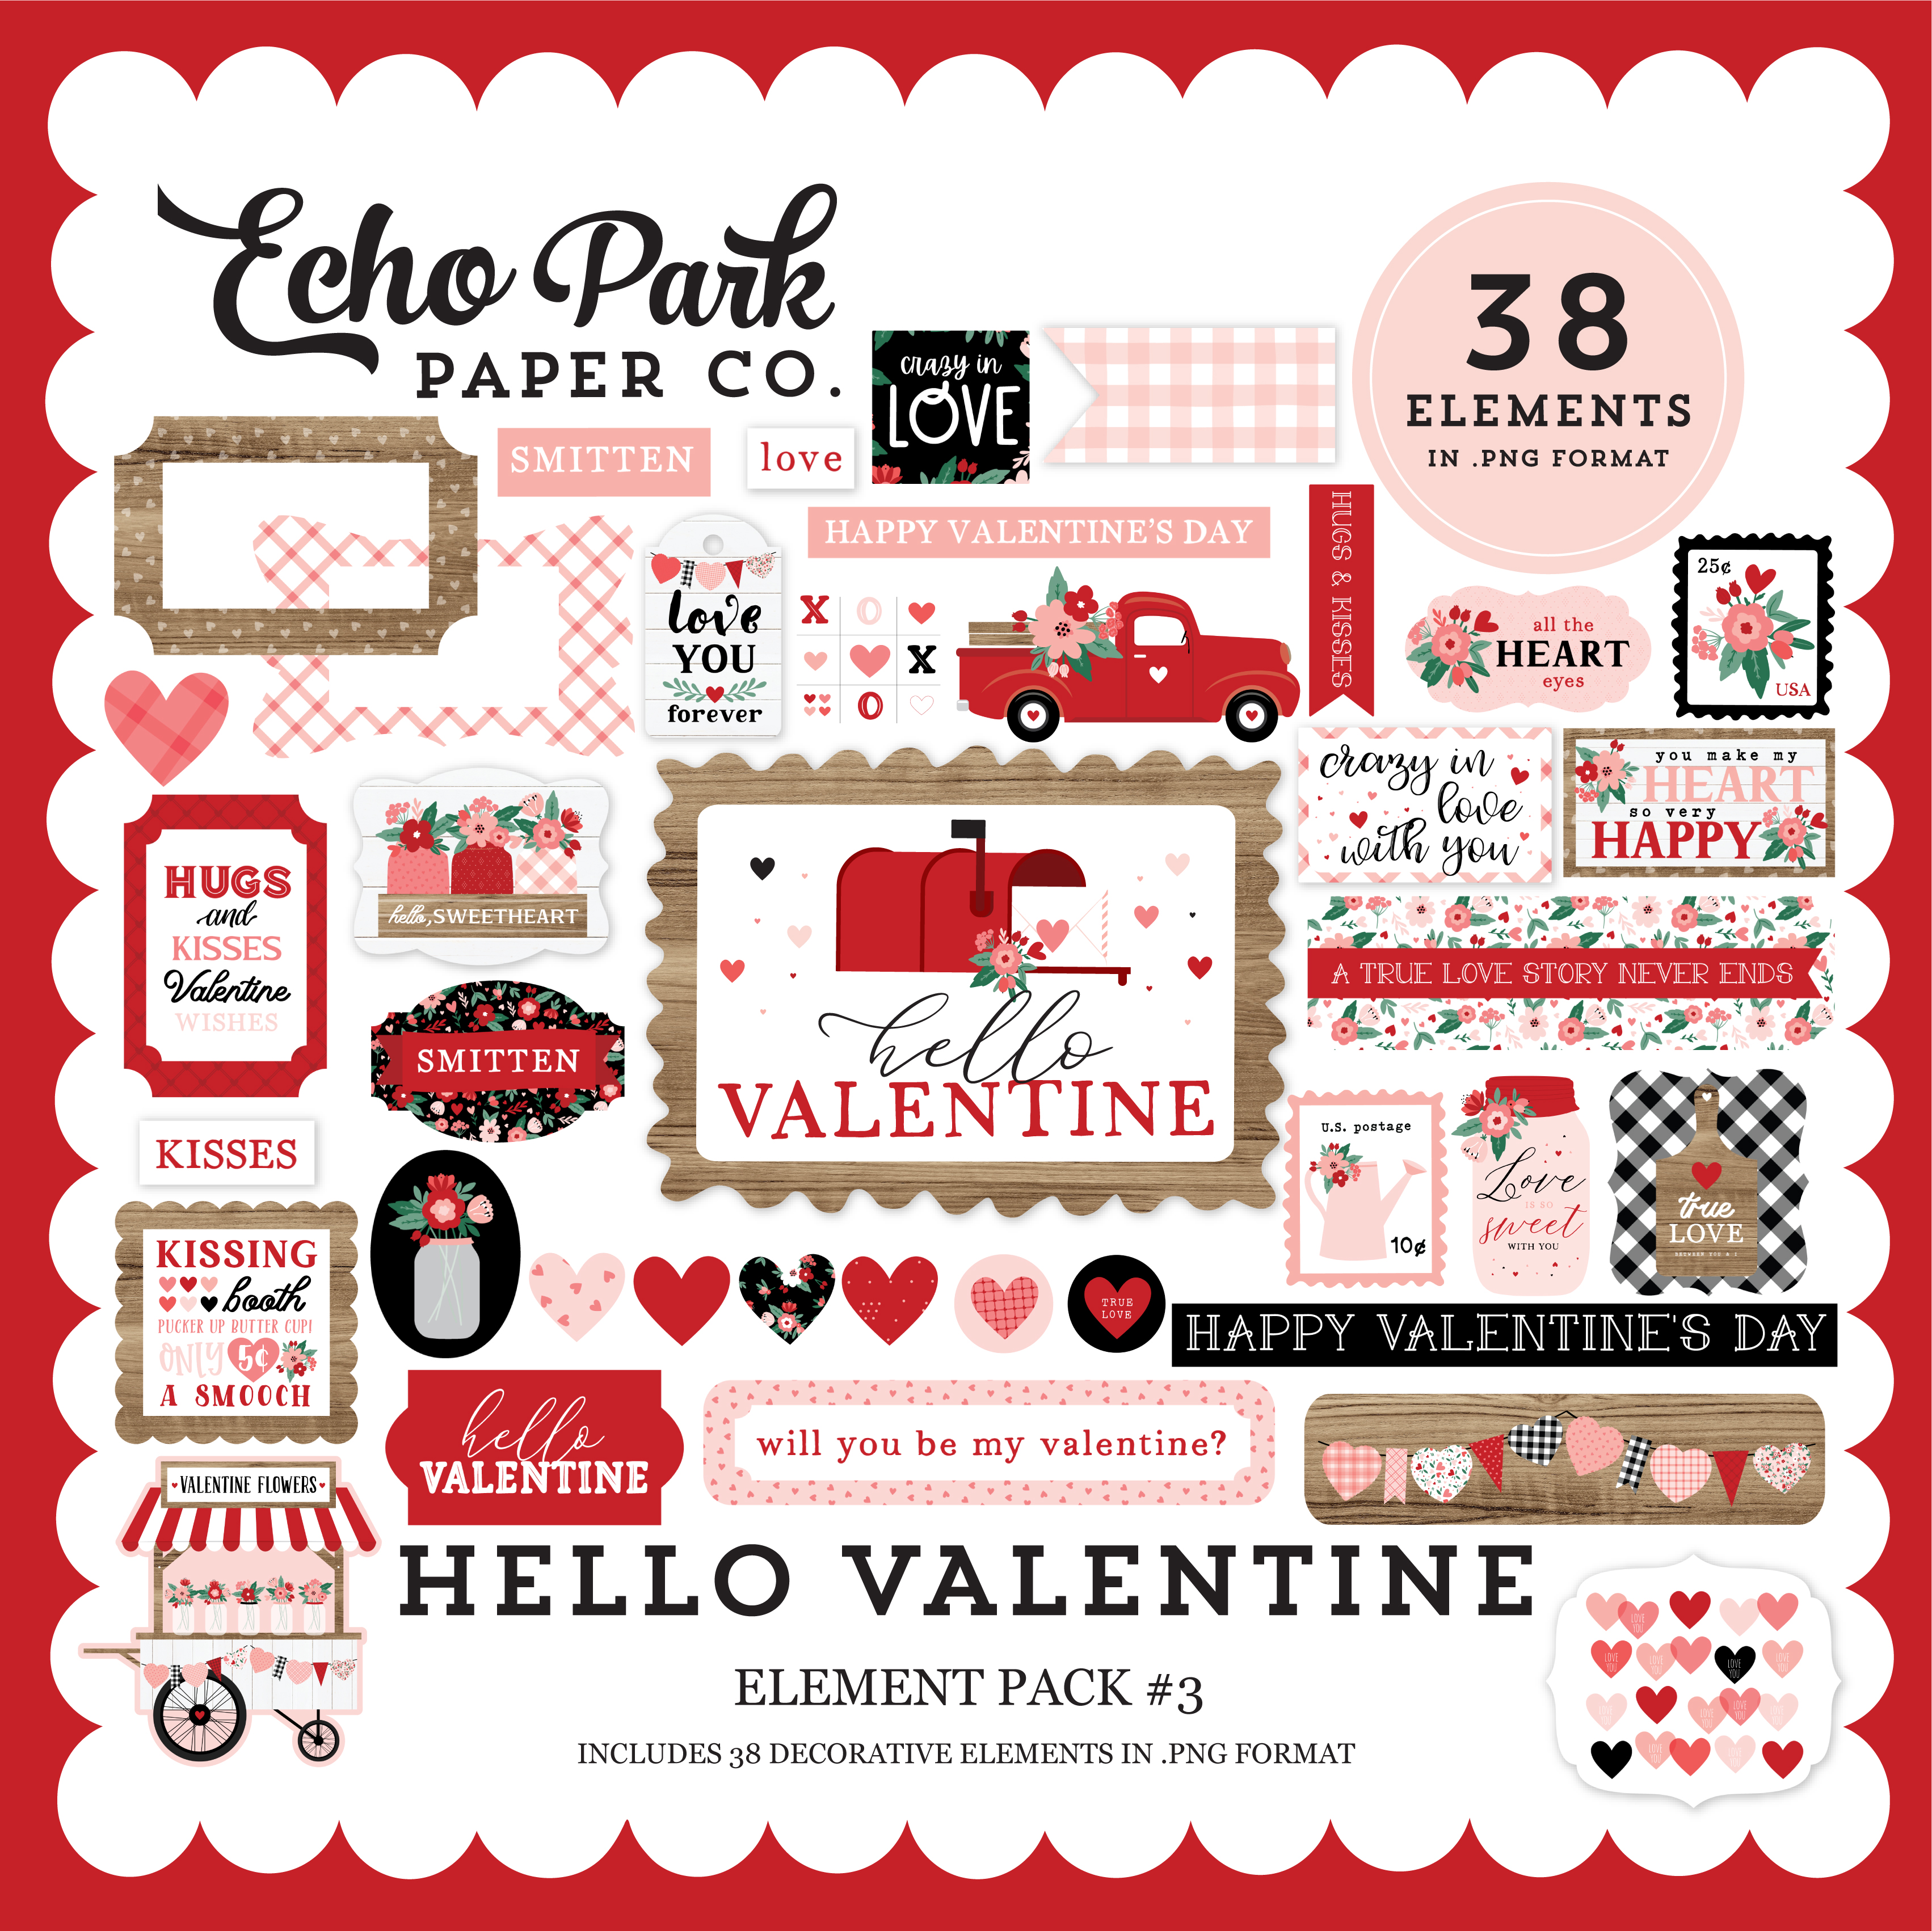 Hello Valentine Element Pack #3